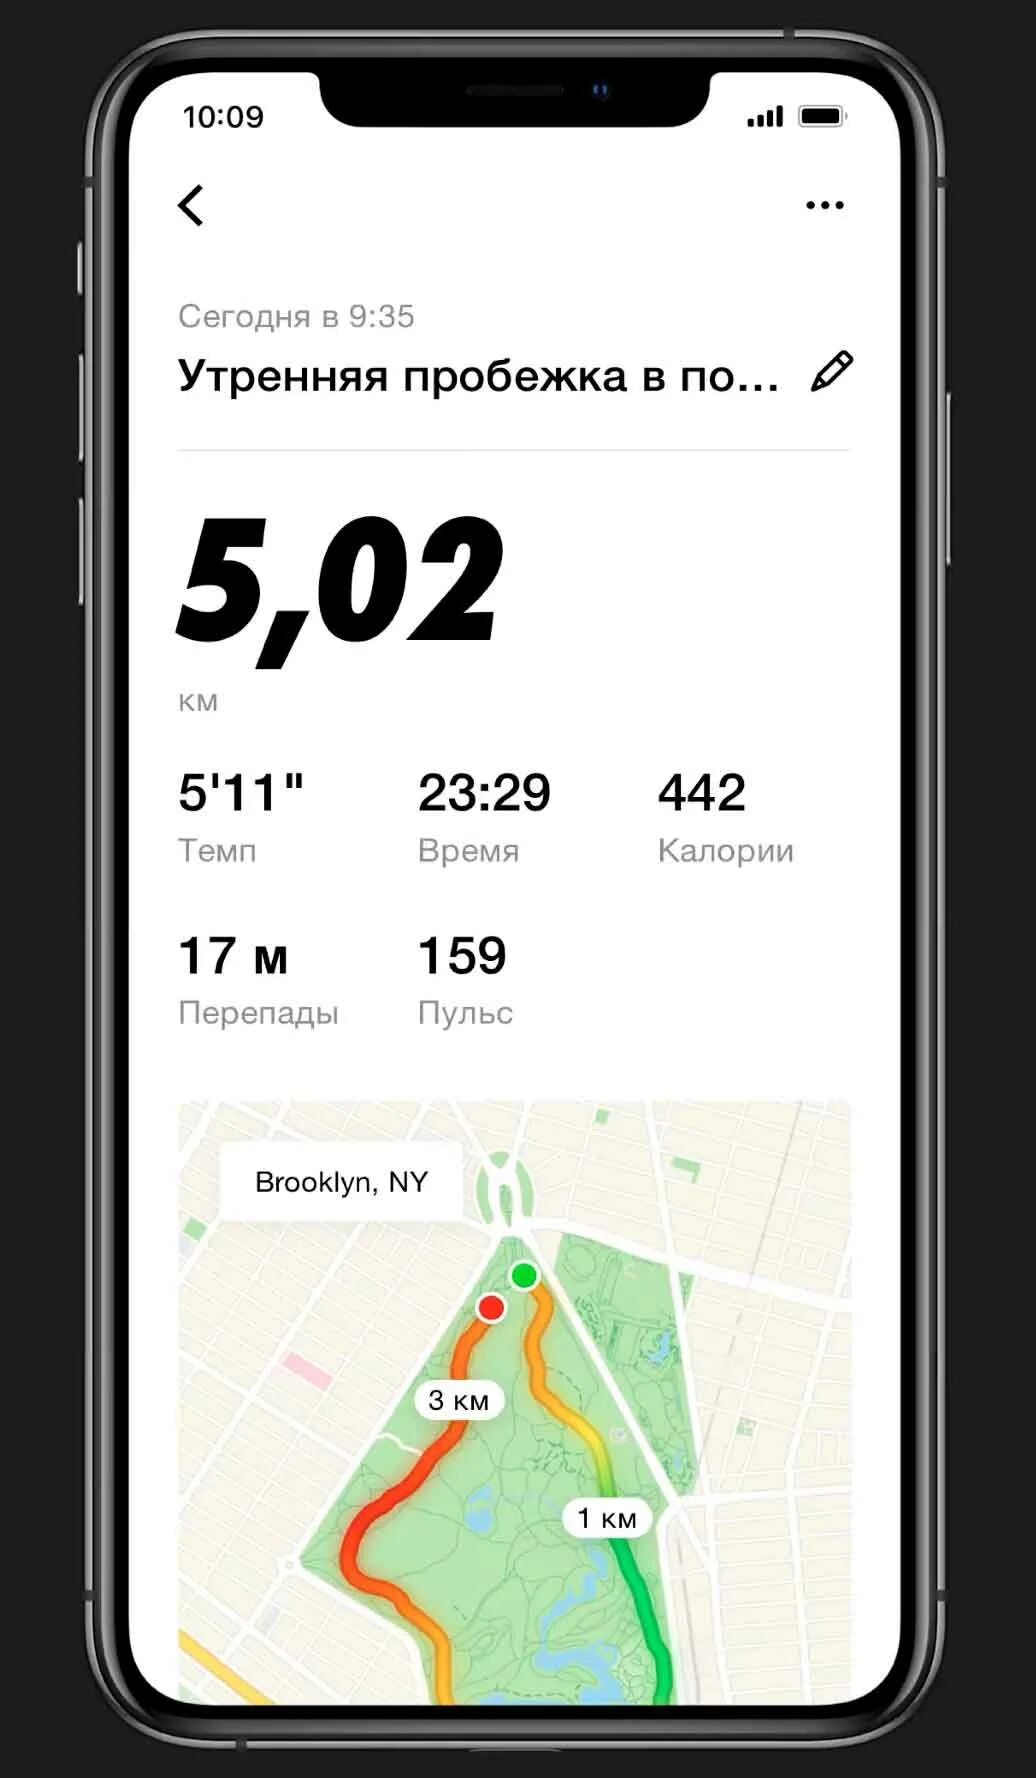 Приложение для бегунов. Nike Run Club приложение Скриншоты. Nike Run приложение для бега. Nike Run Club скрин. Скрин пробежки 45 минут Nike Run.